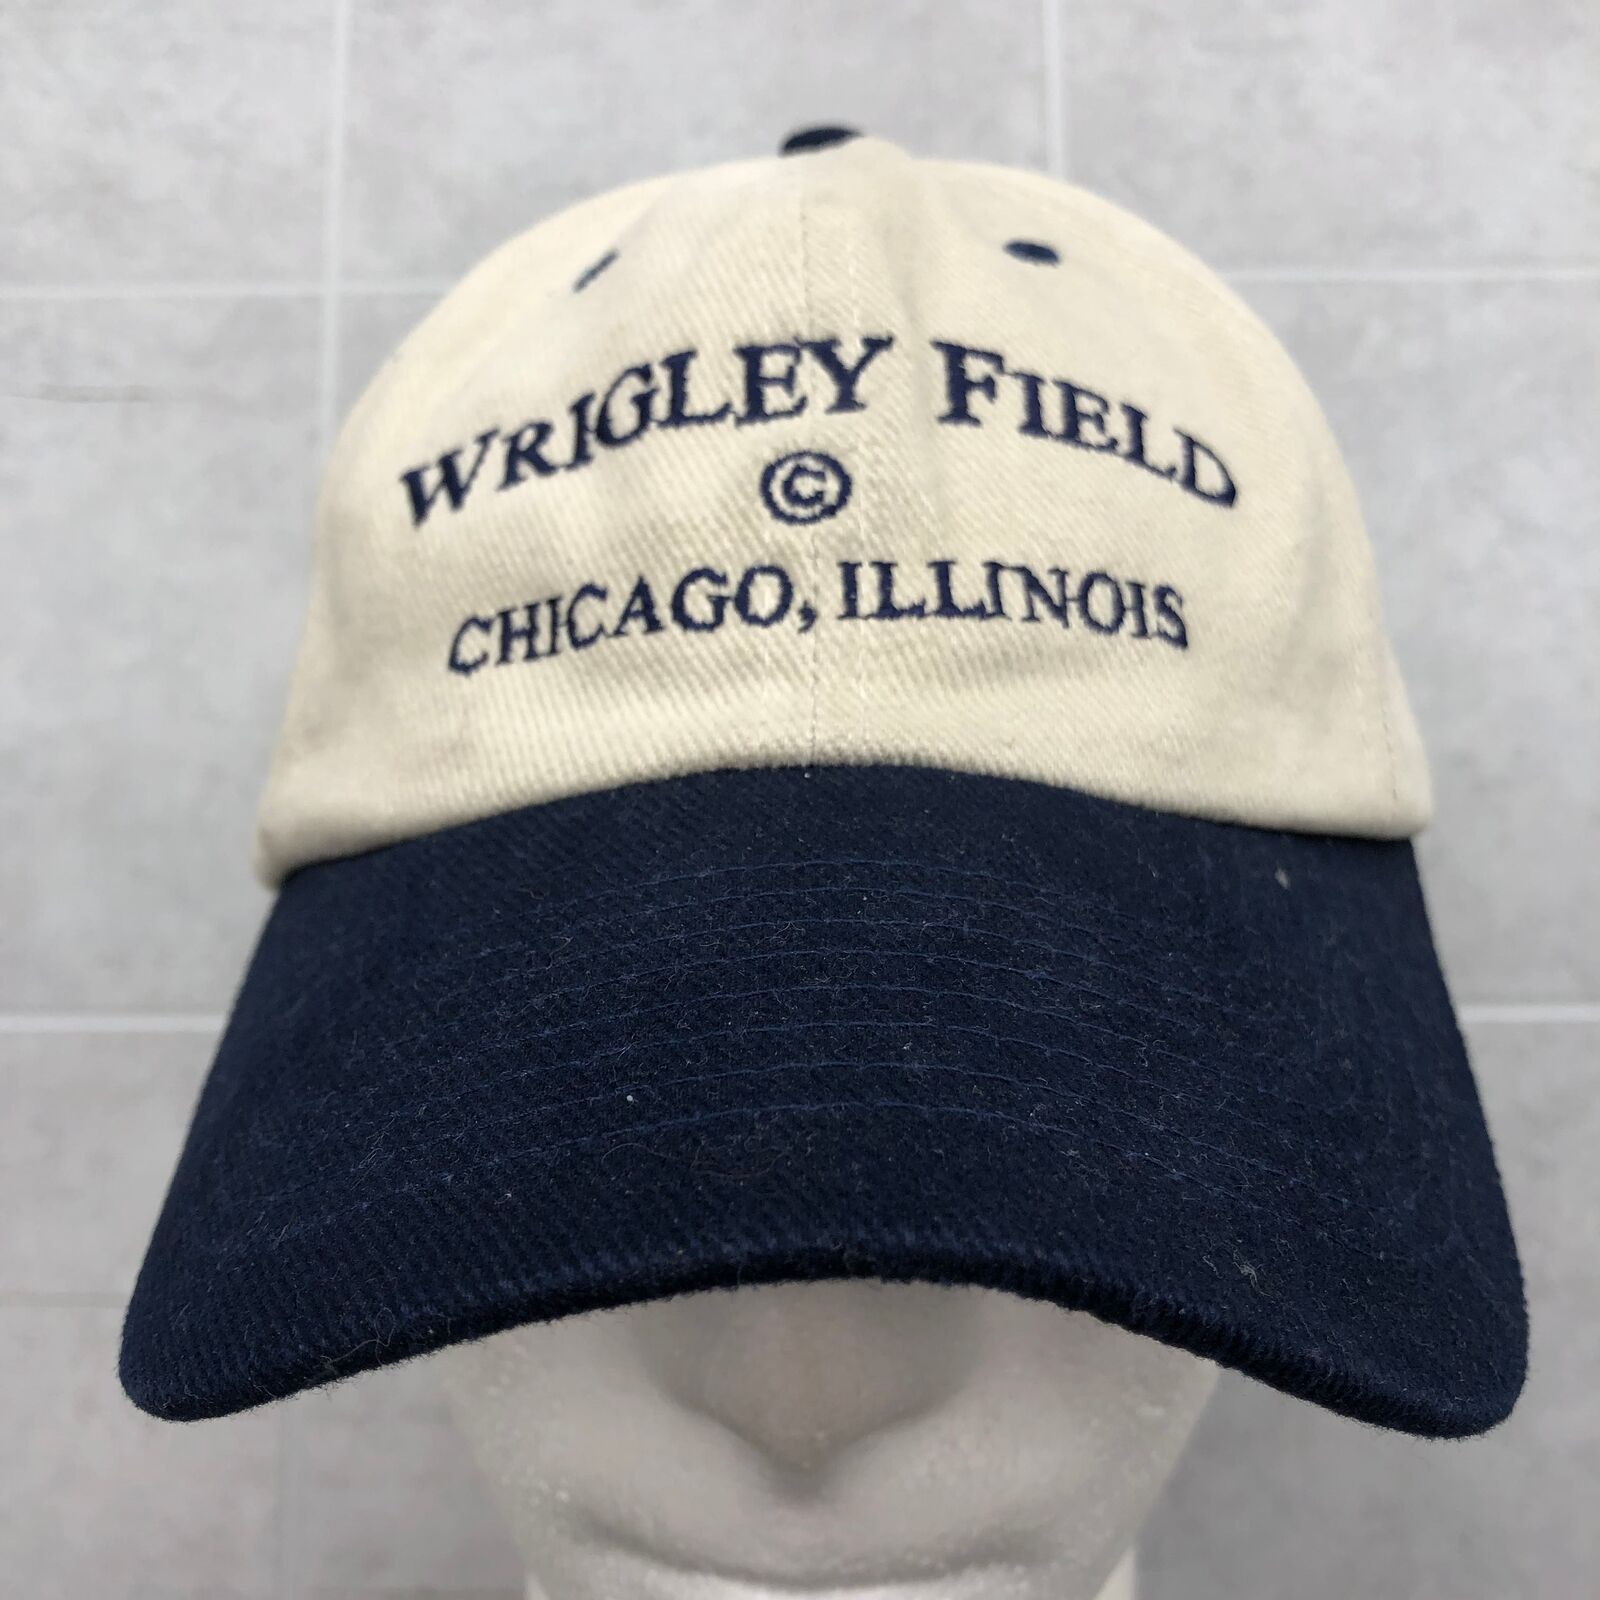 Vintage Nissun Beige Wrigley Field Chicago, Illinois Soft Twill Strapbcak Hat Ad